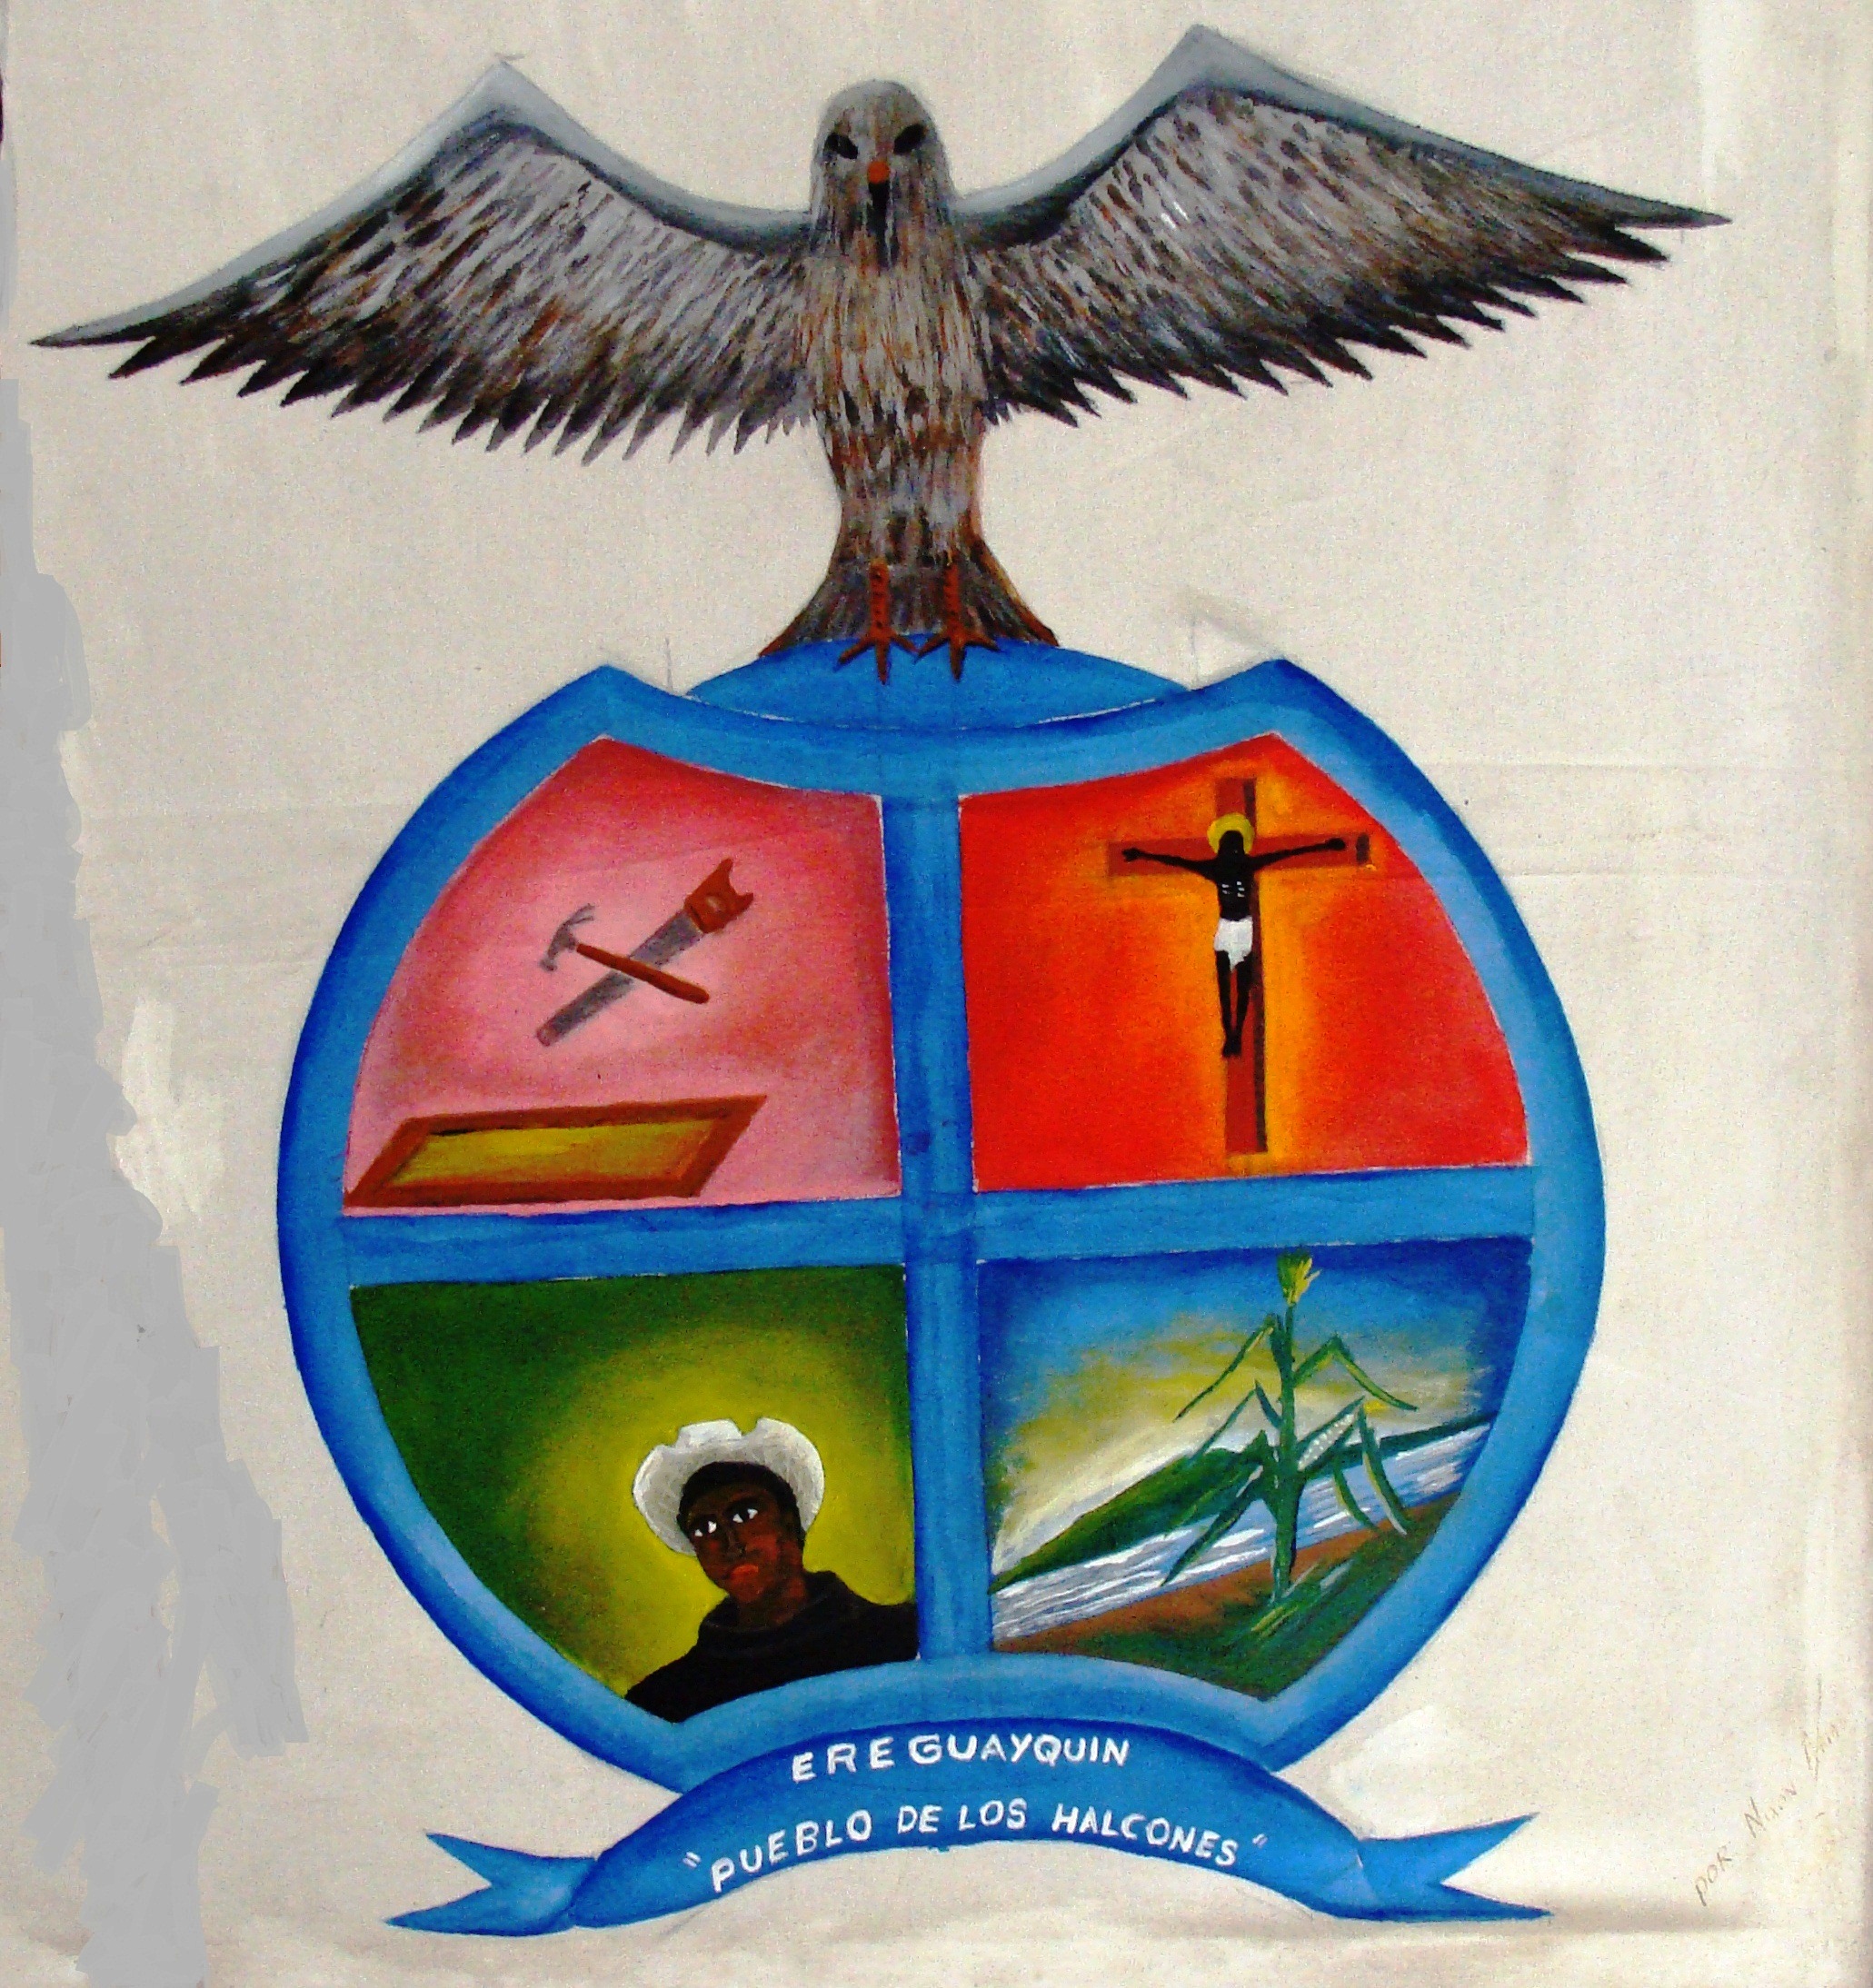 Ereguayquin. Coat of Arms of Ereguayquin. Photo: José Heriberto Erquicia